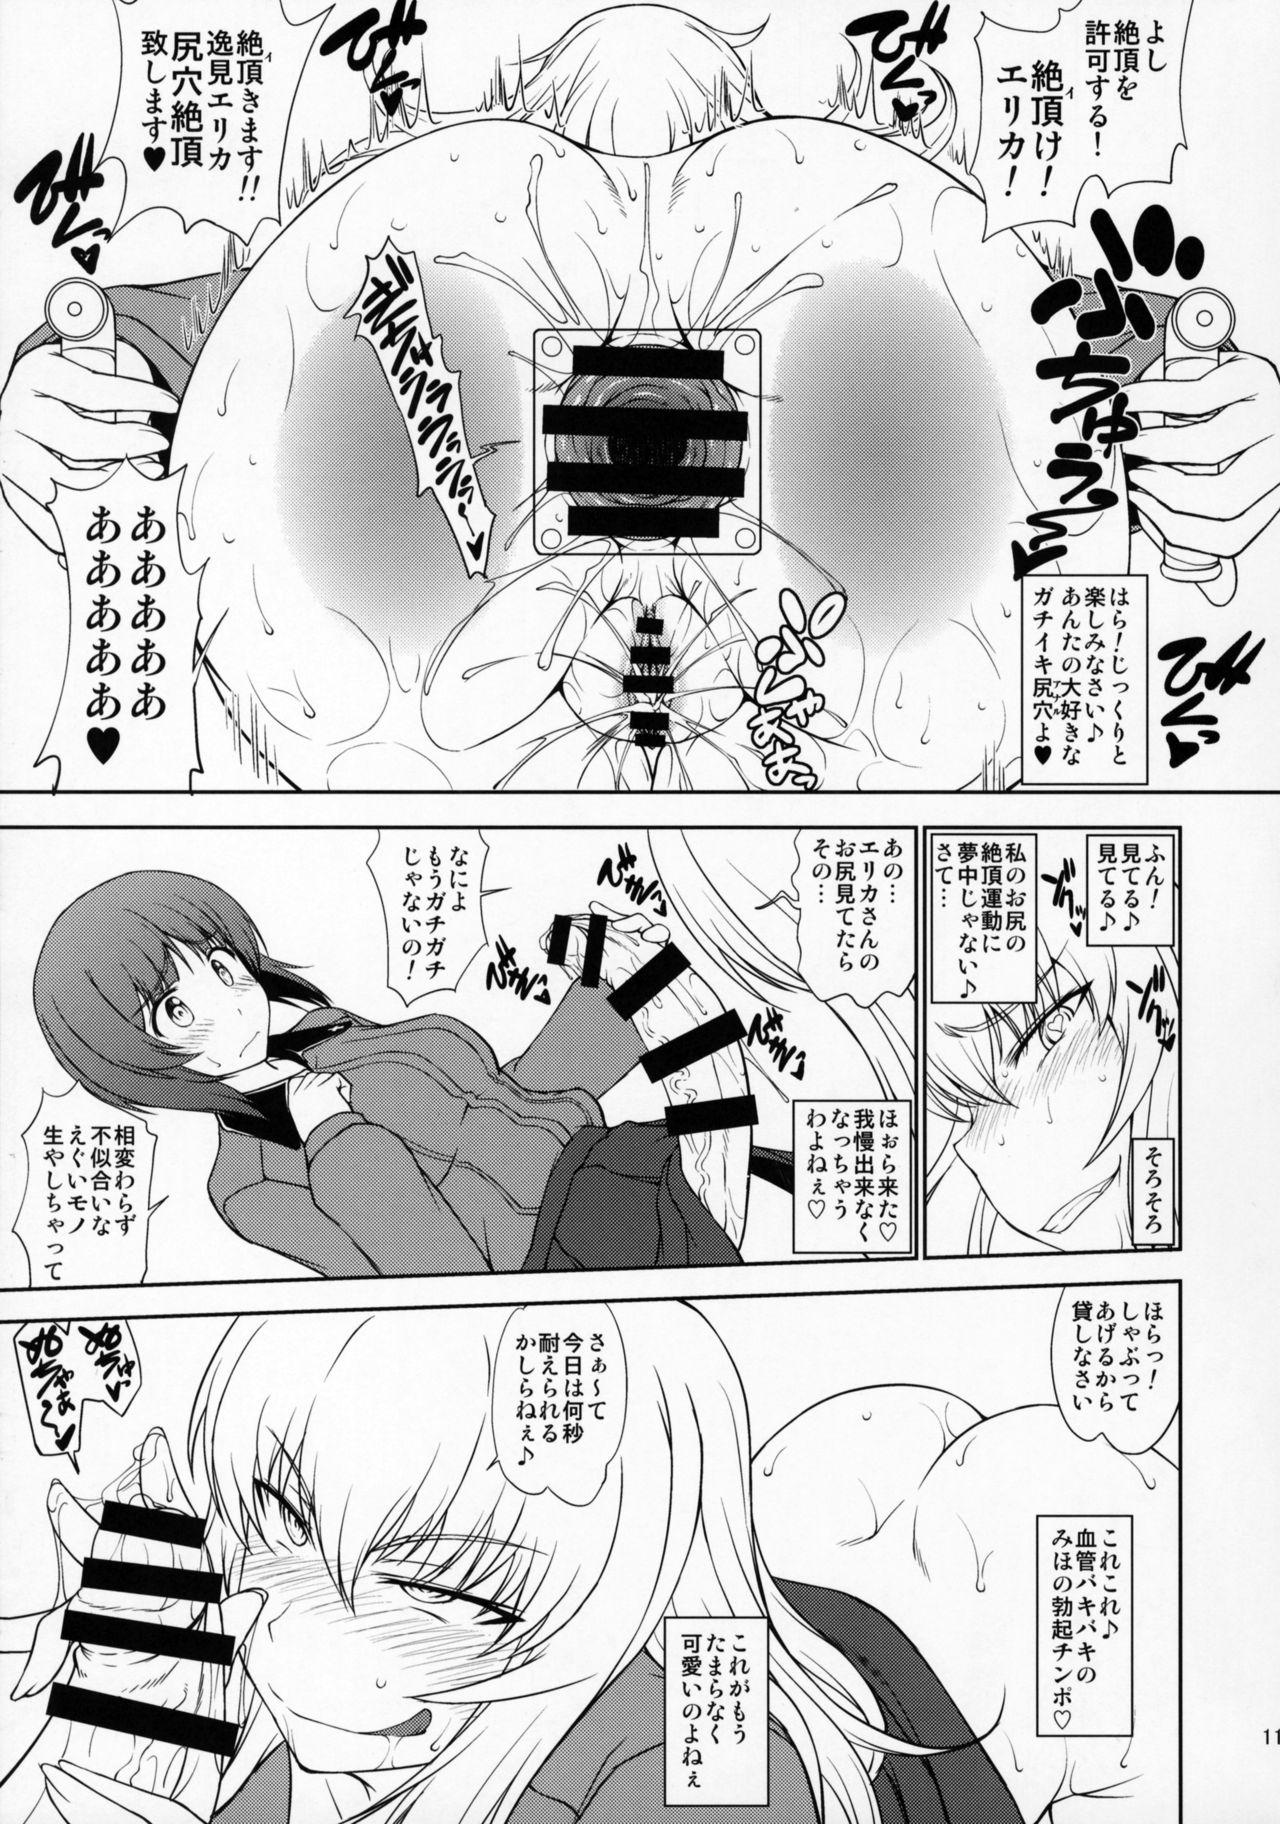 Tetona Maware! Amaki Sasayaki No Mugen Kidou - Girls und panzer Strapon - Page 10